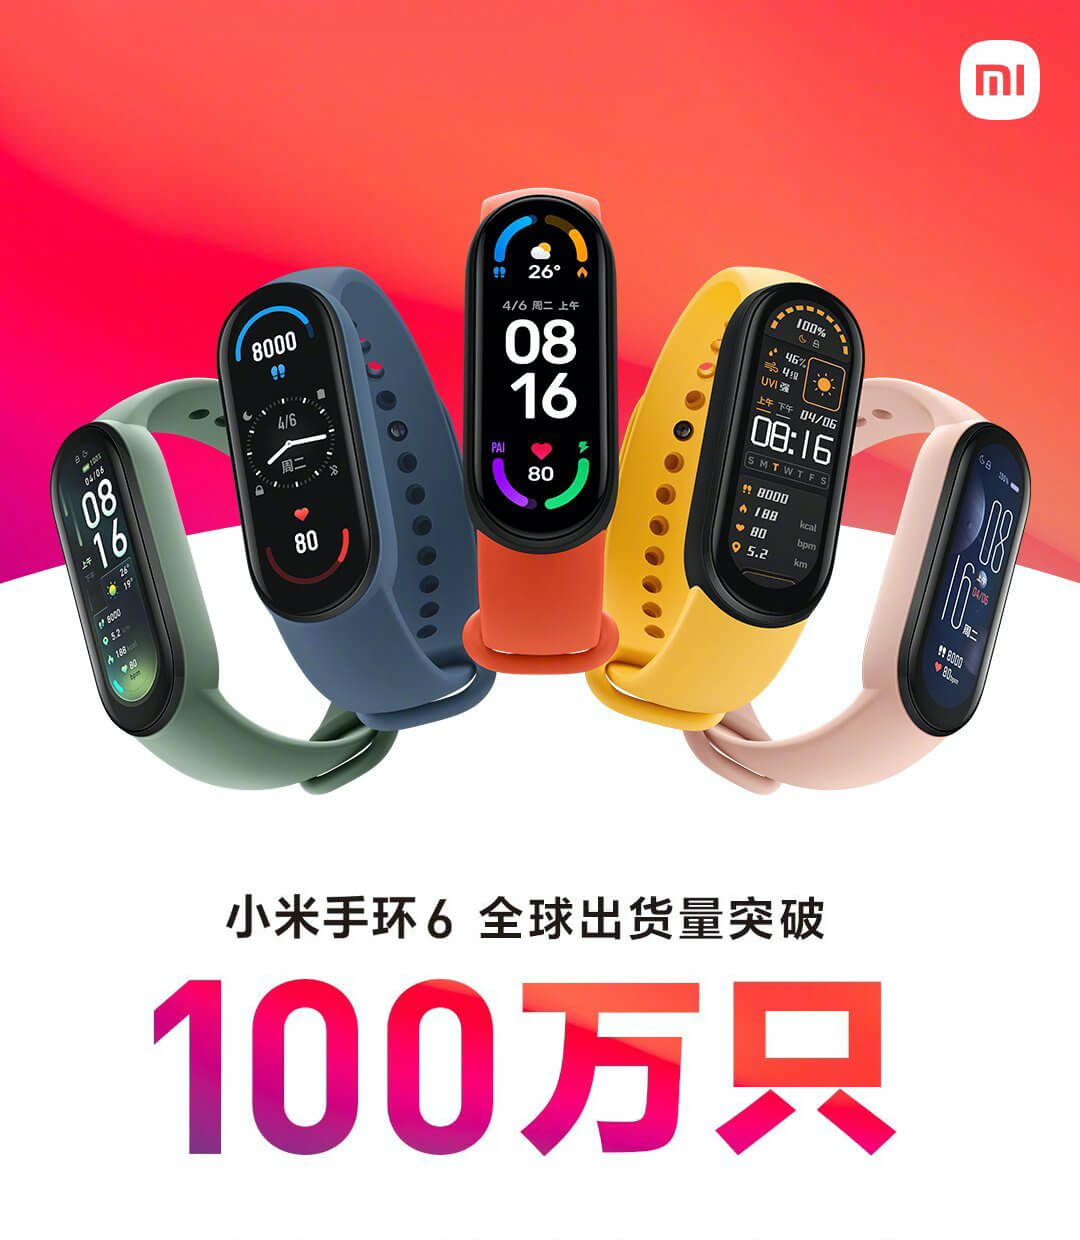 Продажи Xiaomi Mi Band 6 превысили отметку в 1 миллион единиц